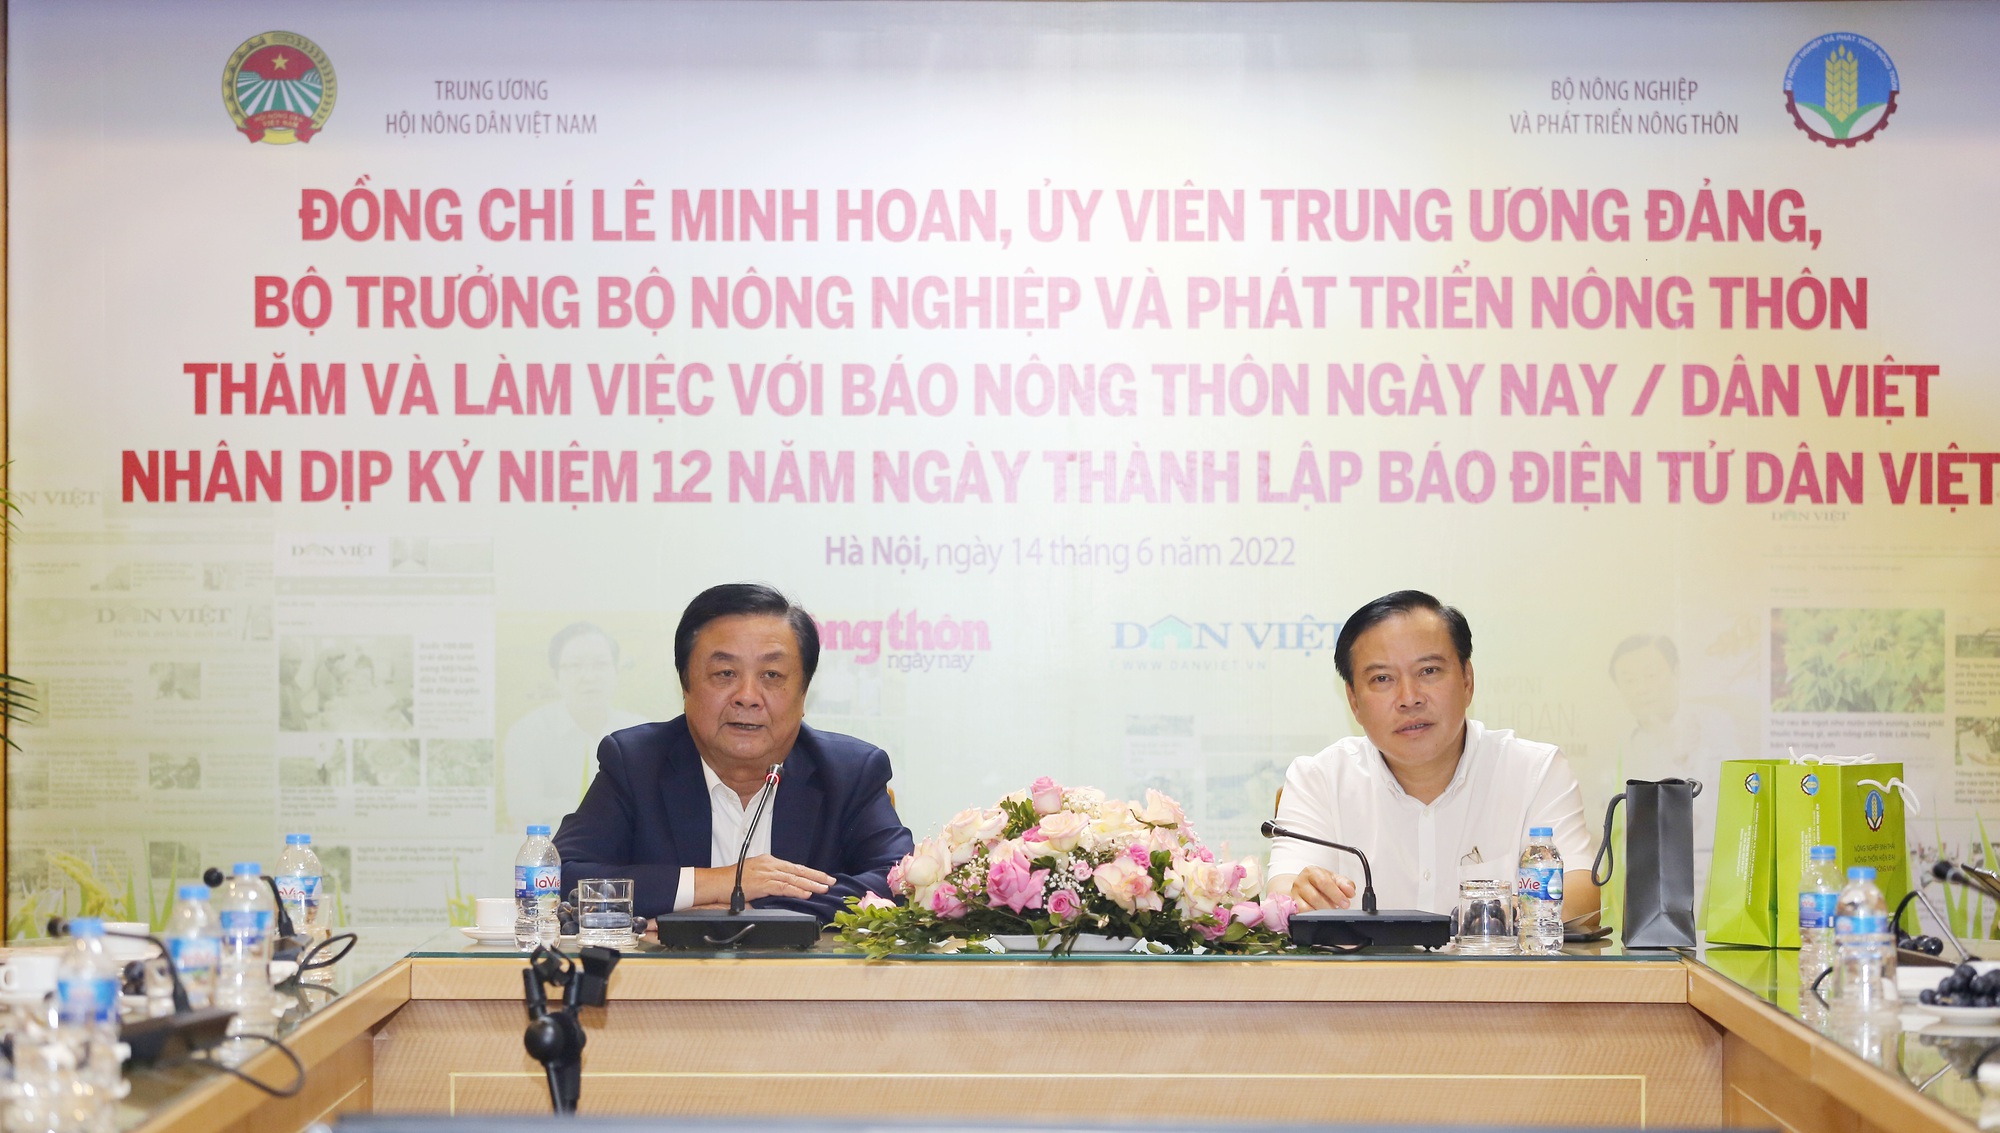 Bộ trưởng Lê Minh Hoan: Báo NTNN/Báo điện tử Dân Việt góp phần rất lớn để Bộ NNPTNT hoạch định chính sách - Ảnh 5.